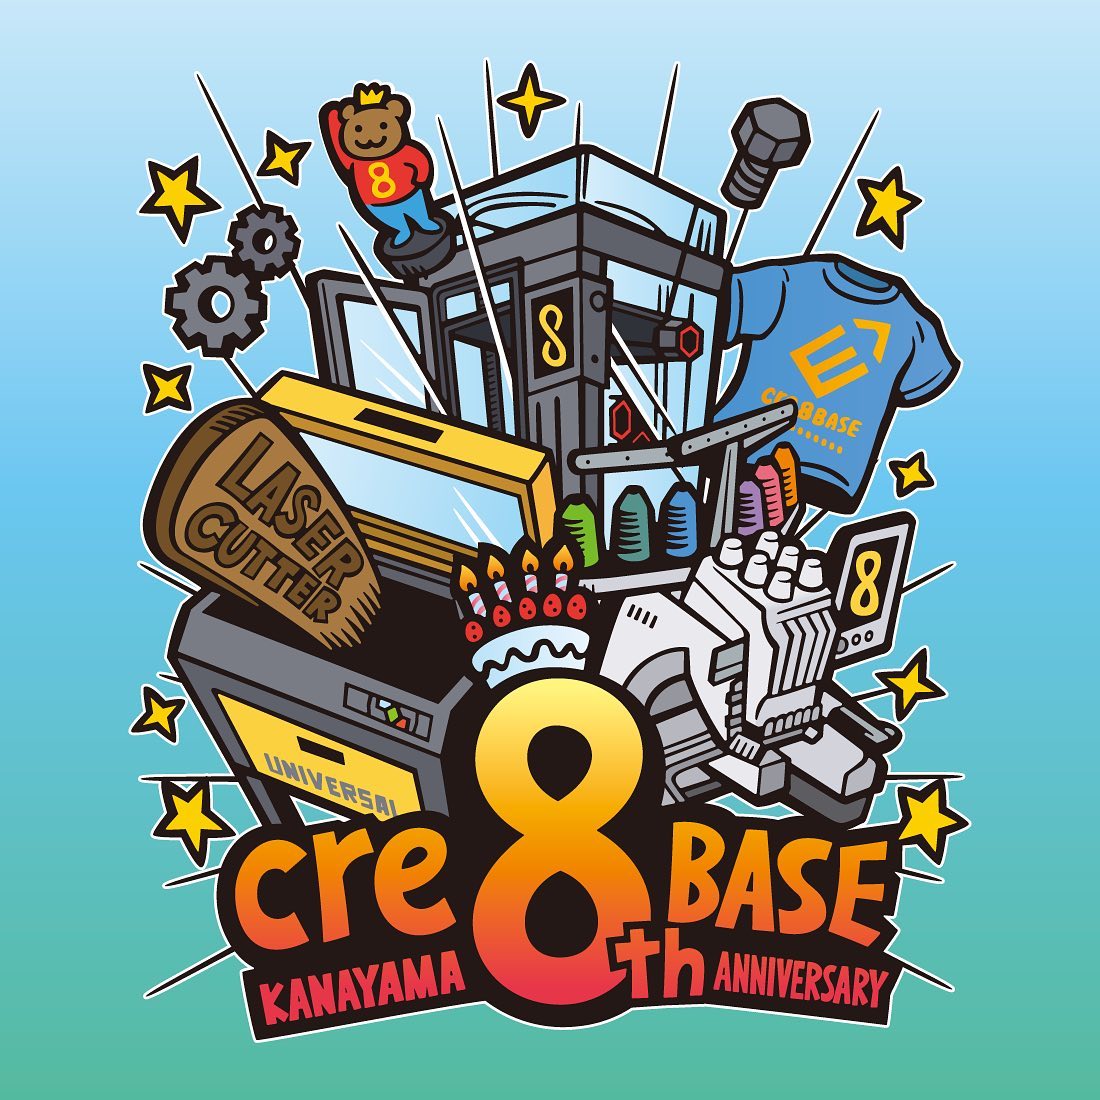 cre8 BASE KANAYAMA 8周年記念イラスト